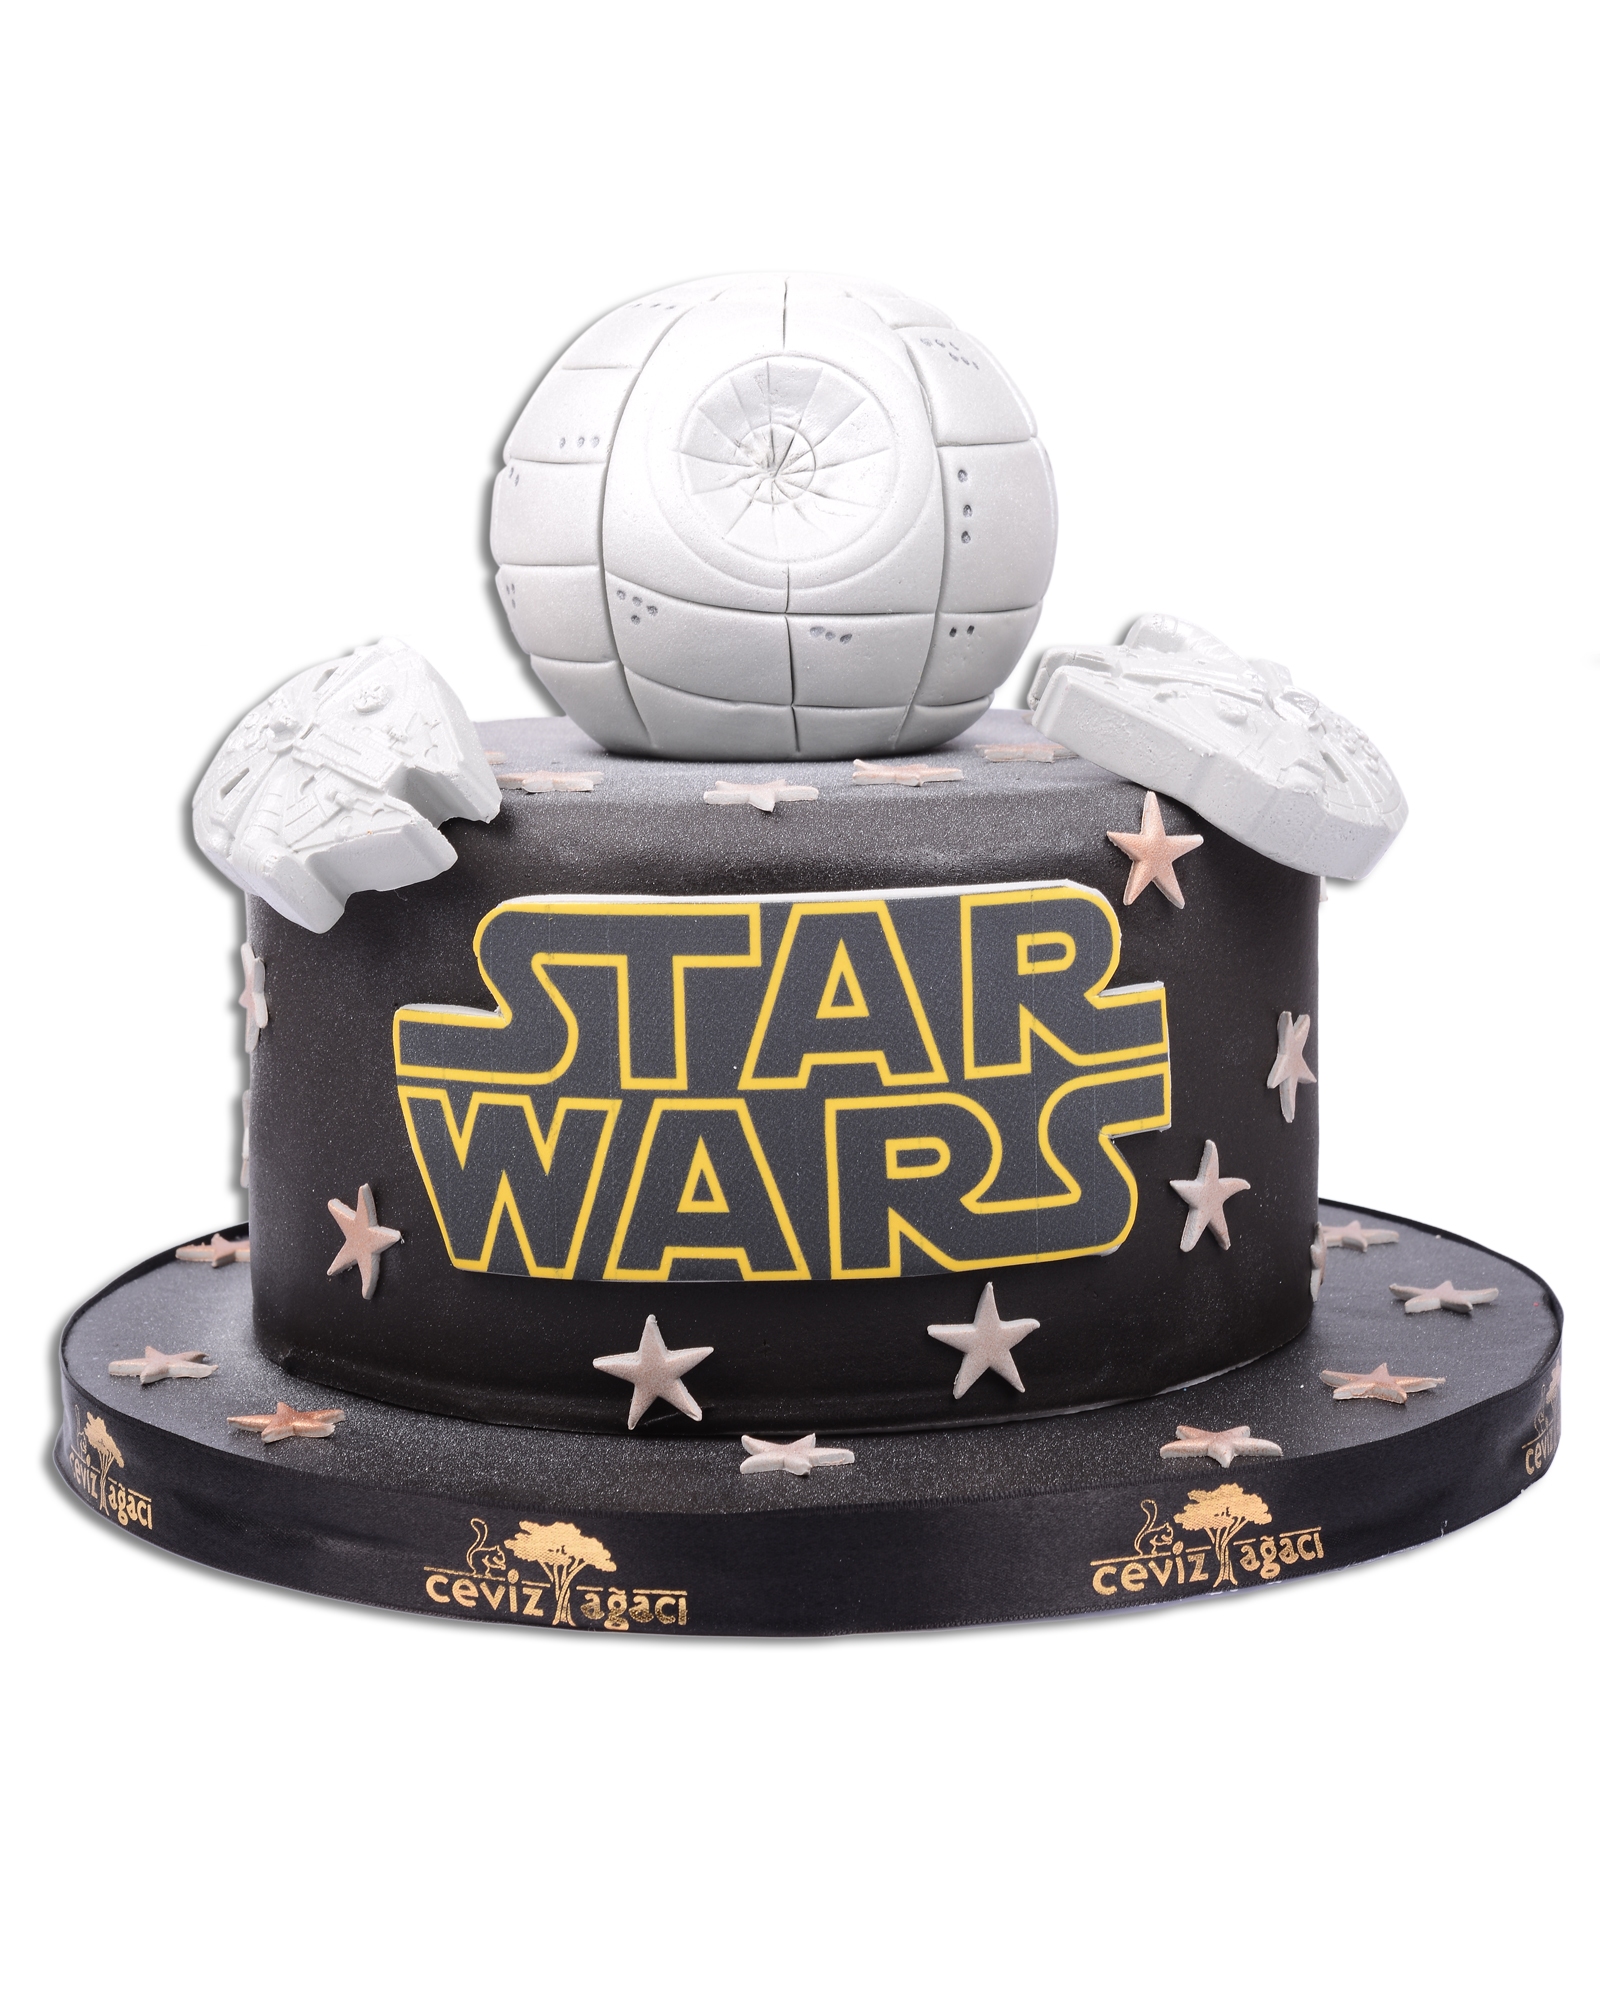 Star Wars Doğum Günü Pastası  1